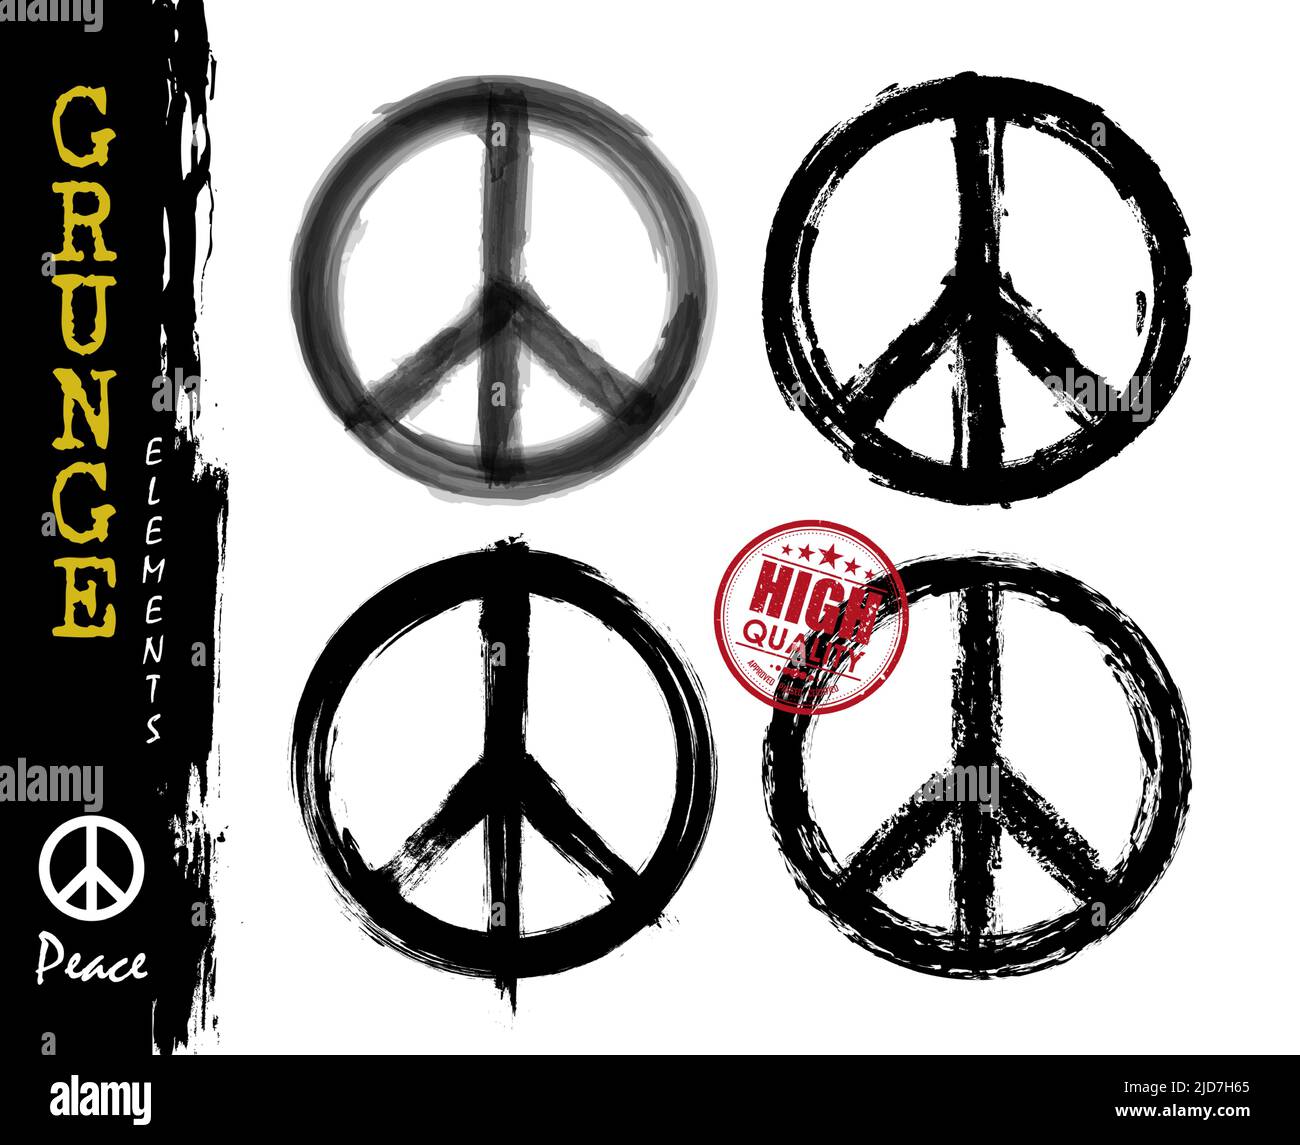 Symbole de l'ensemble de la paix . Dessin réaliste à la main avec grunge, aquarelle et craie. La campagne pour le désarmement nucléaire (CND) signe . Paisible et h Illustration de Vecteur